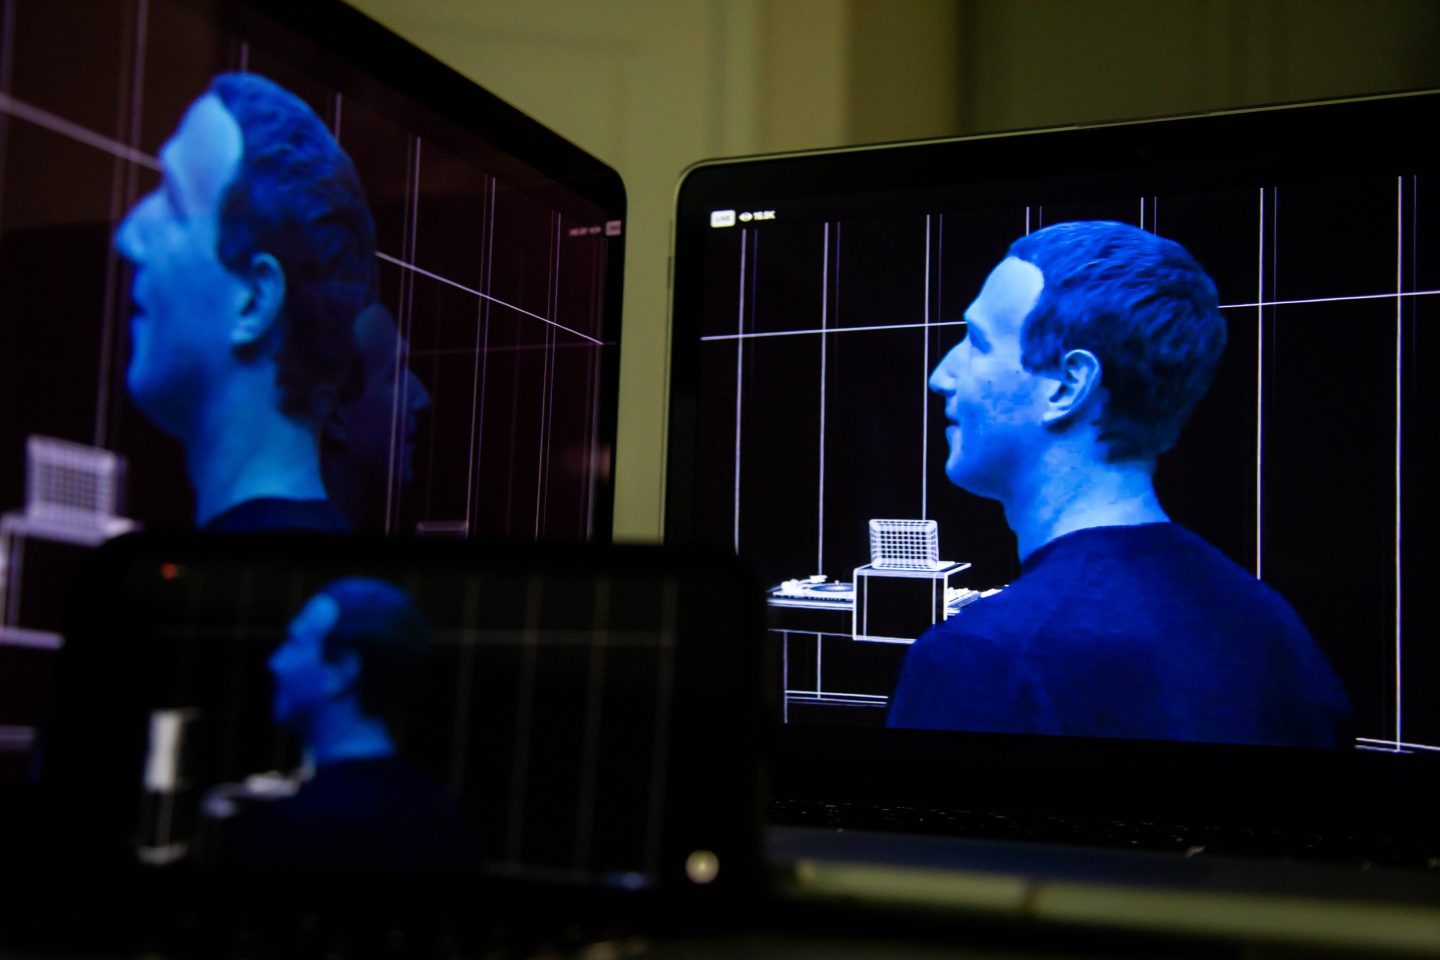 Computer screens depicting Mark Zuckerberg